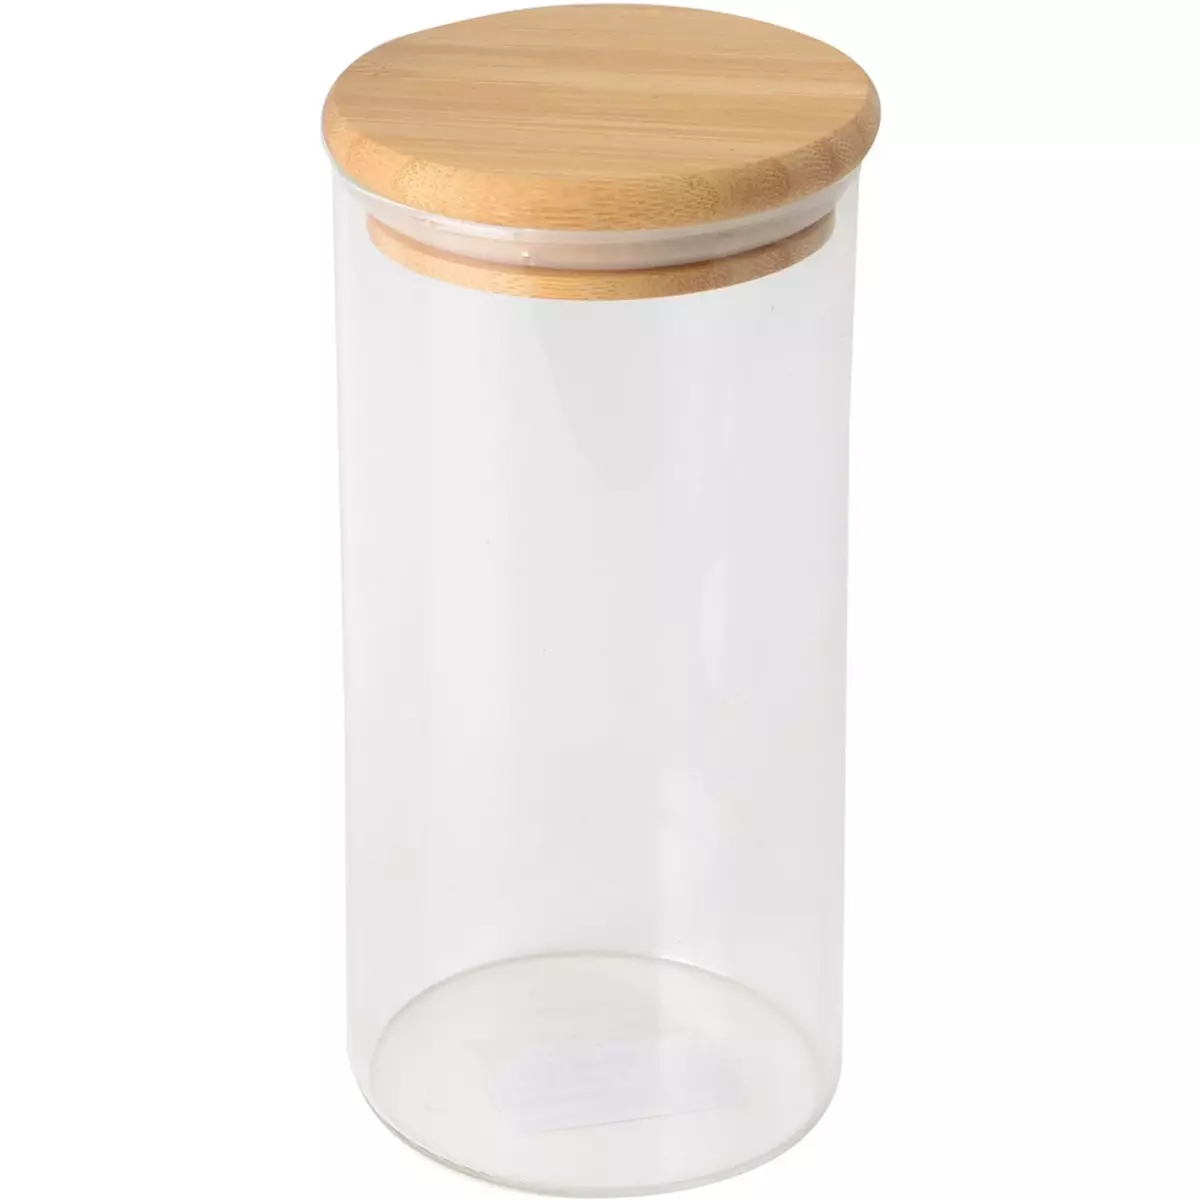 ACTUEL Bocal verre + couvercle en bambou 0.7 litre